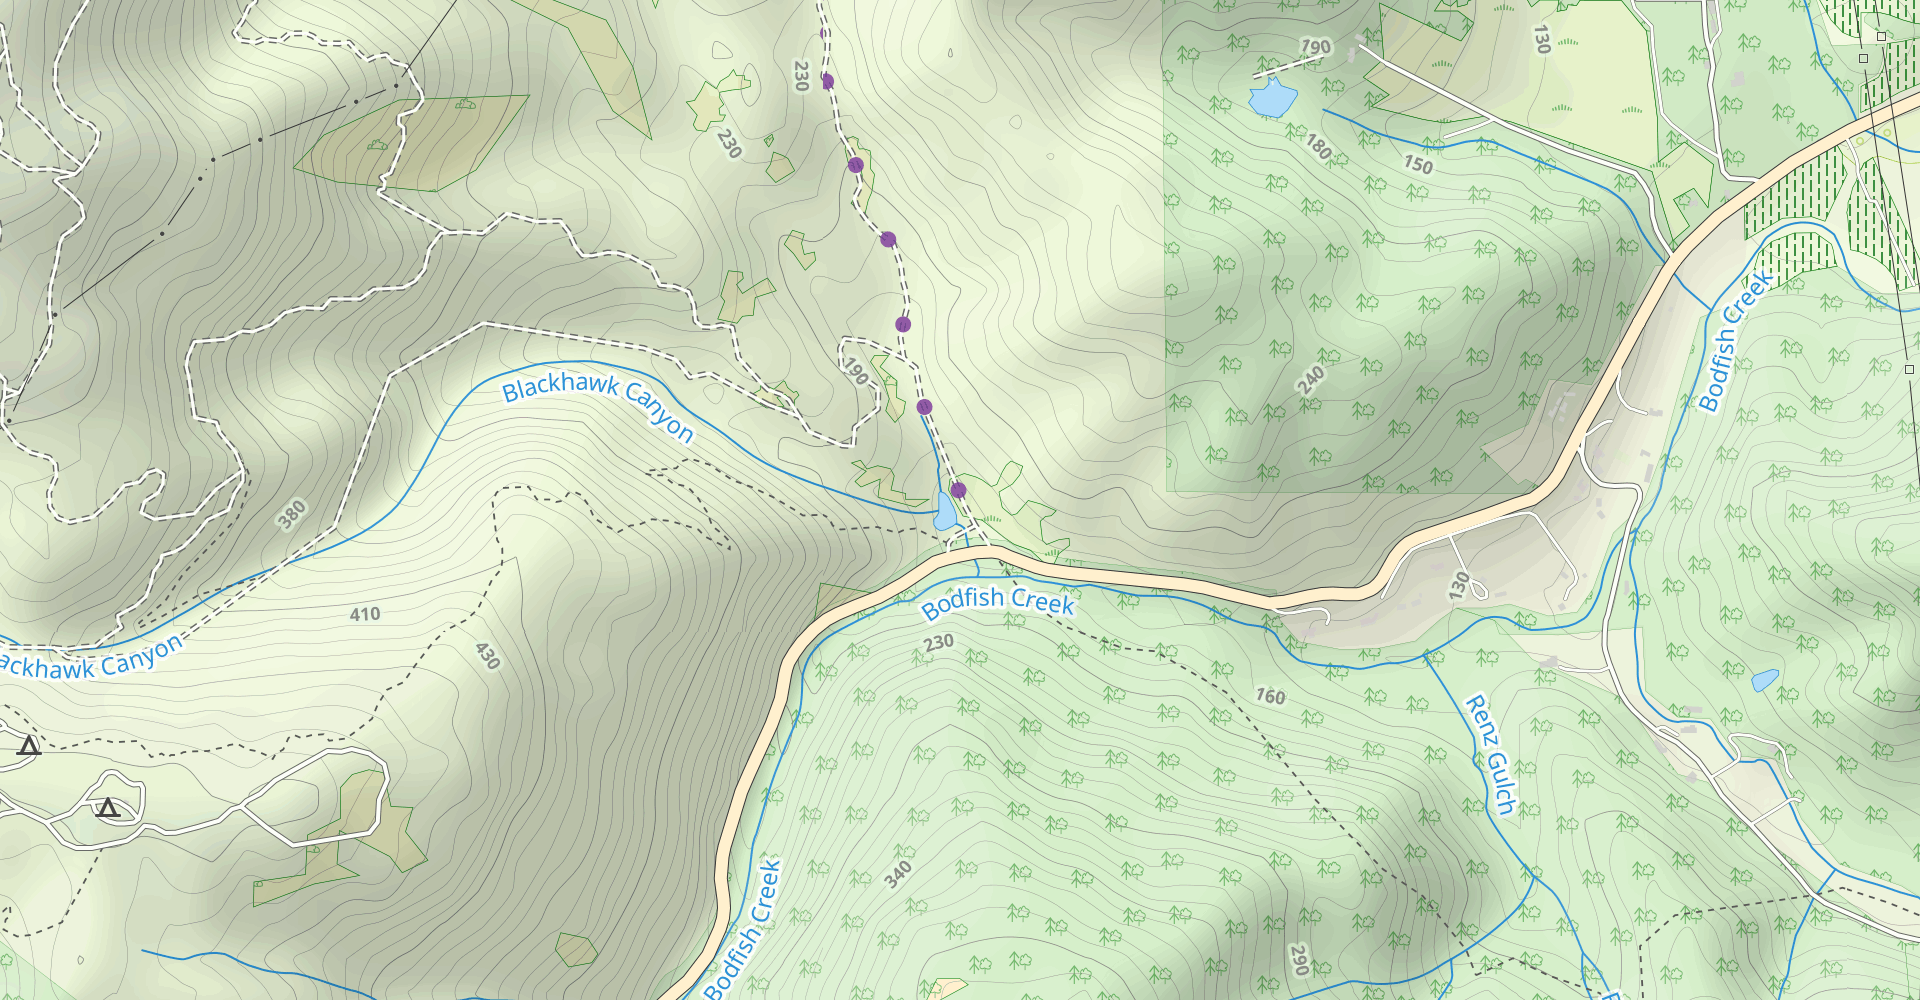 Ridge and Sprig Trails Loop